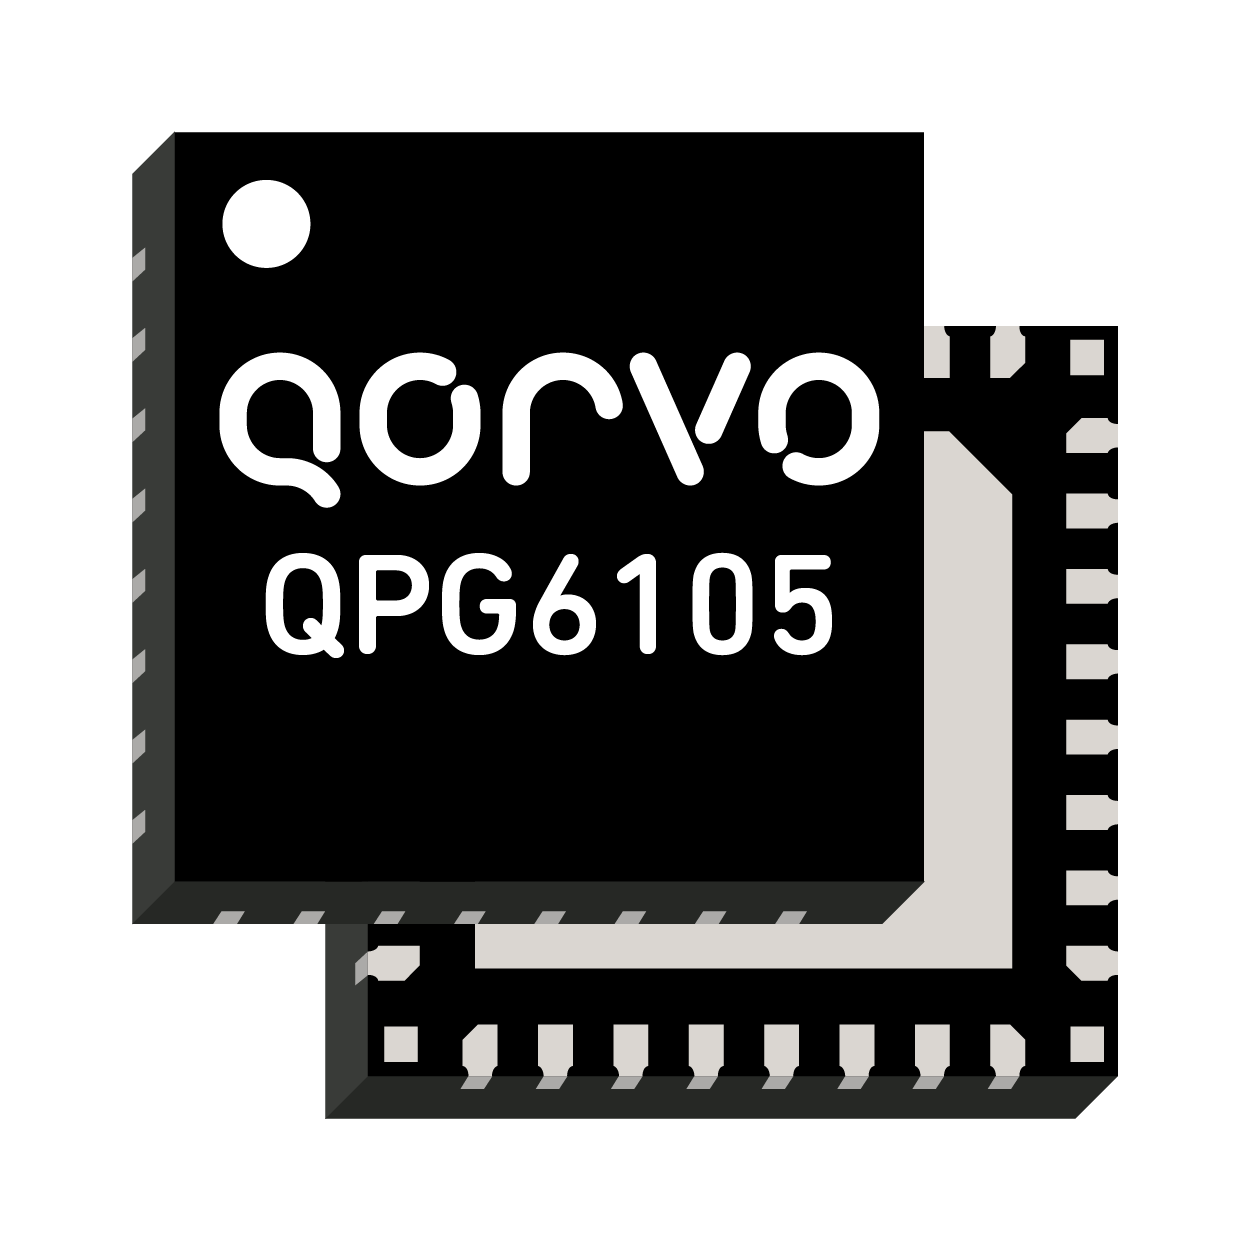 QPG6100 Qorvo